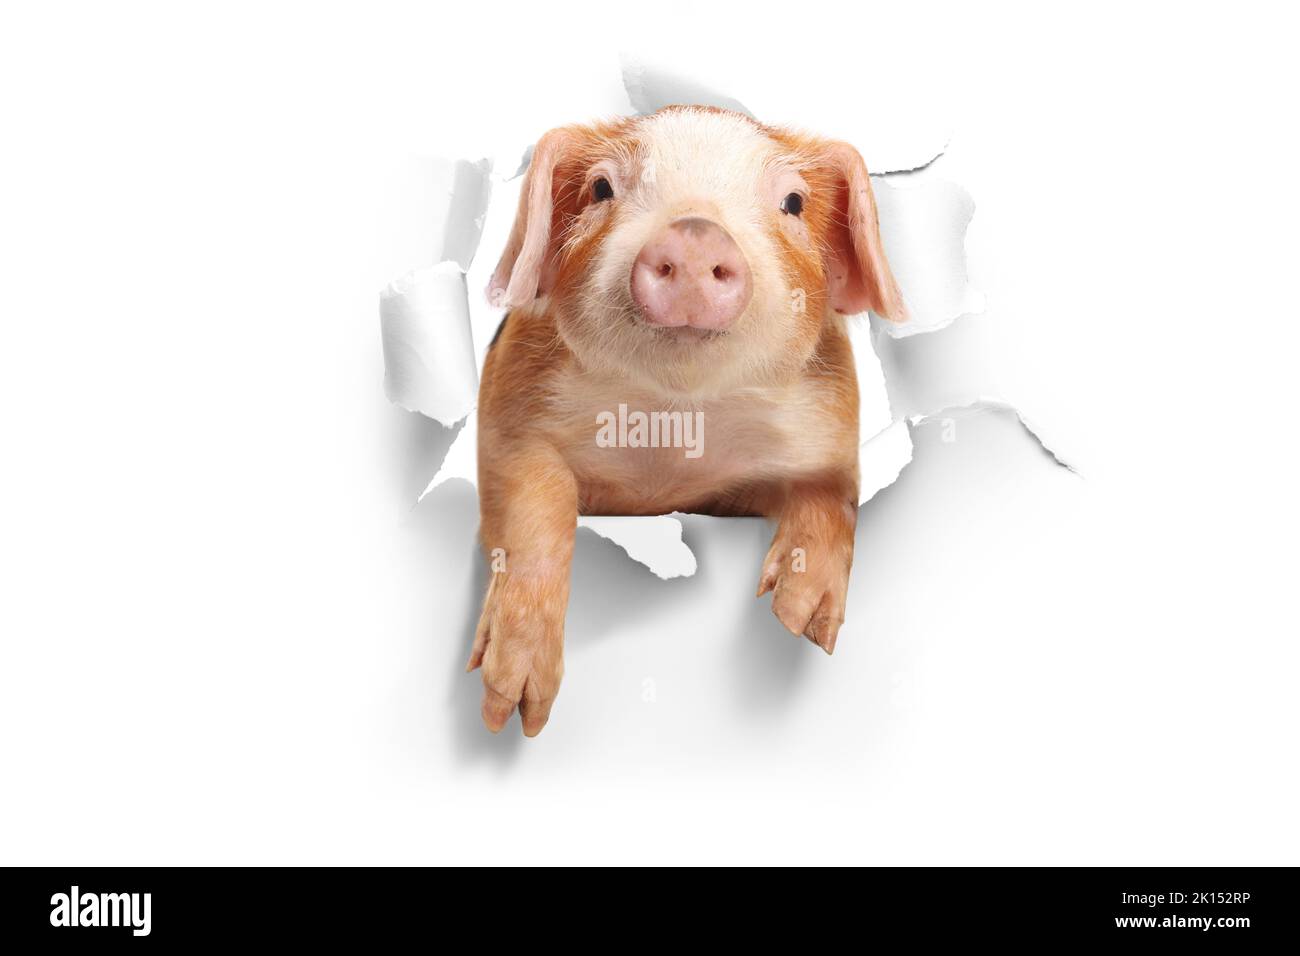 Un petit cochon drôle piquer à travers un trou de papier Banque D'Images